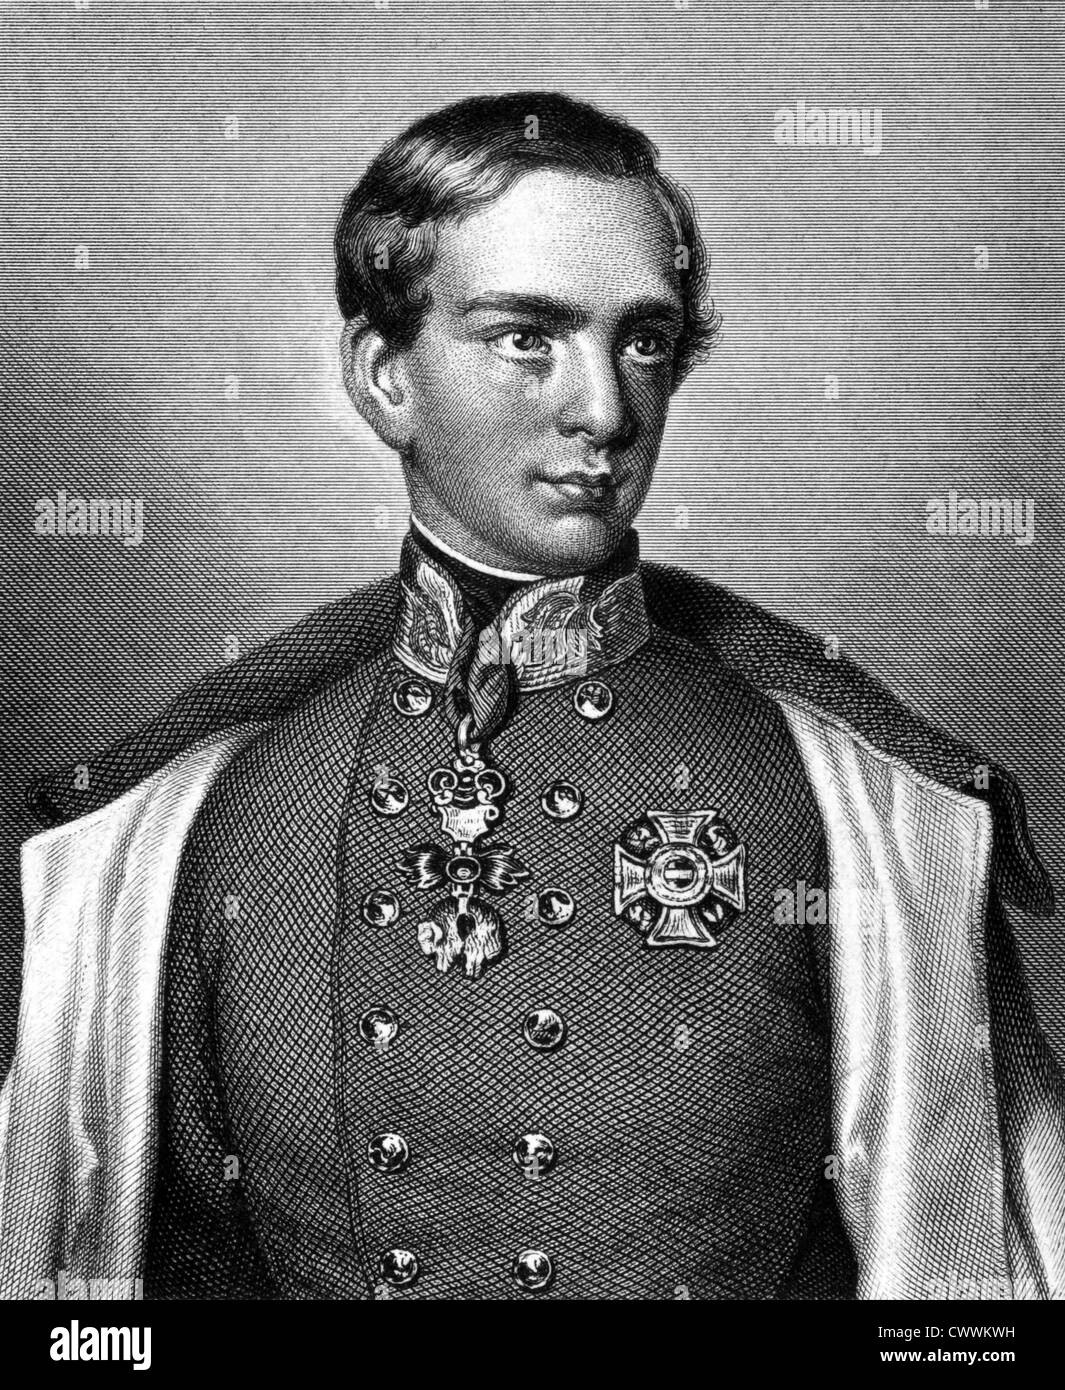 Franz Joseph i. von Österreich (1830-1916) auf Kupferstich aus dem Jahr 1859. Kaiser von Österreich. Stockfoto